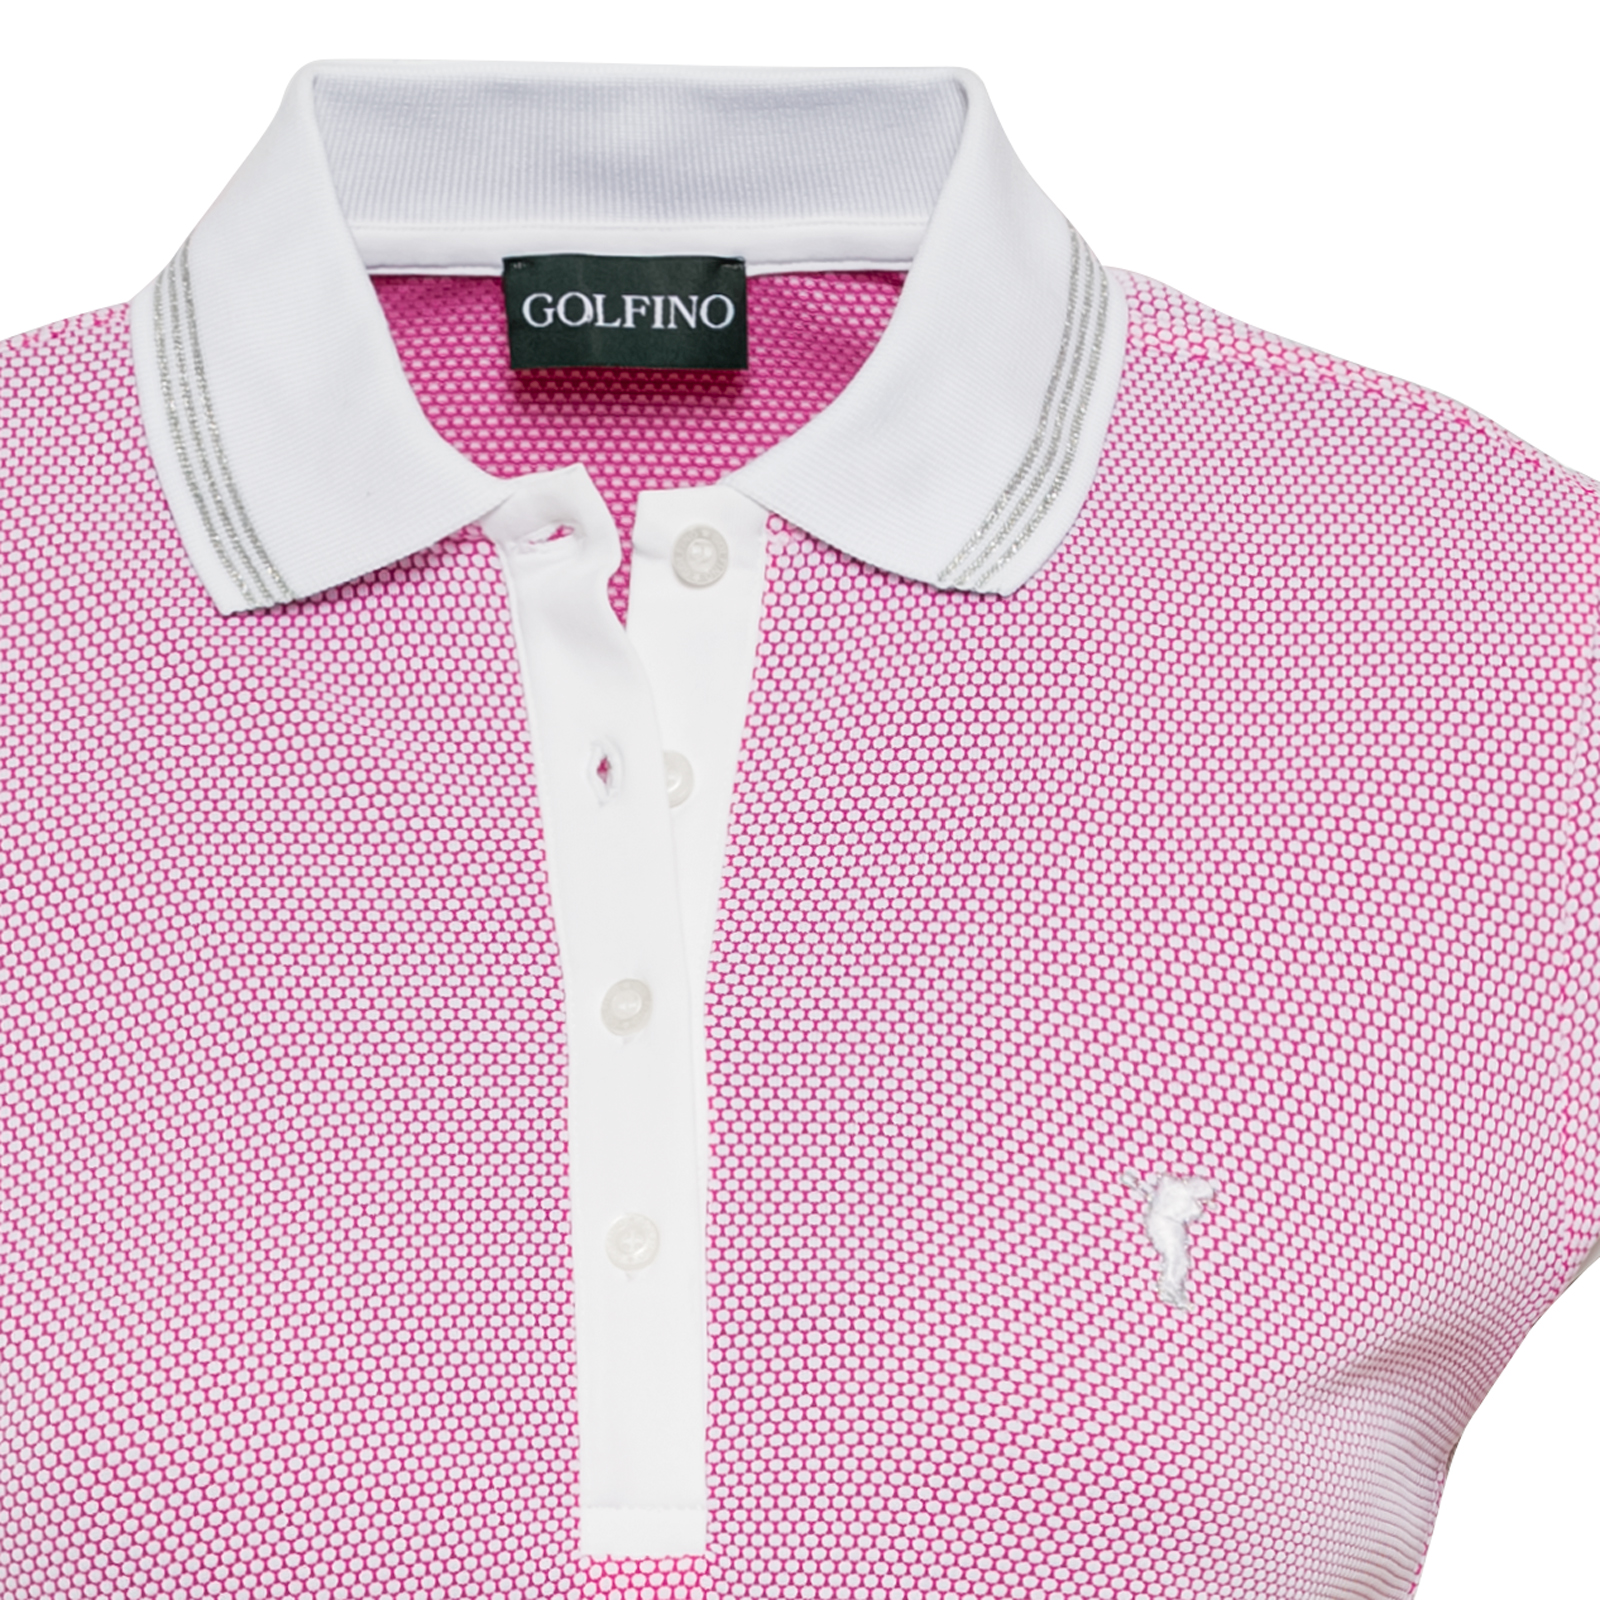 Polo de golf con mangas extracortas de tejido bubble jacquard de alta calidad para mujer